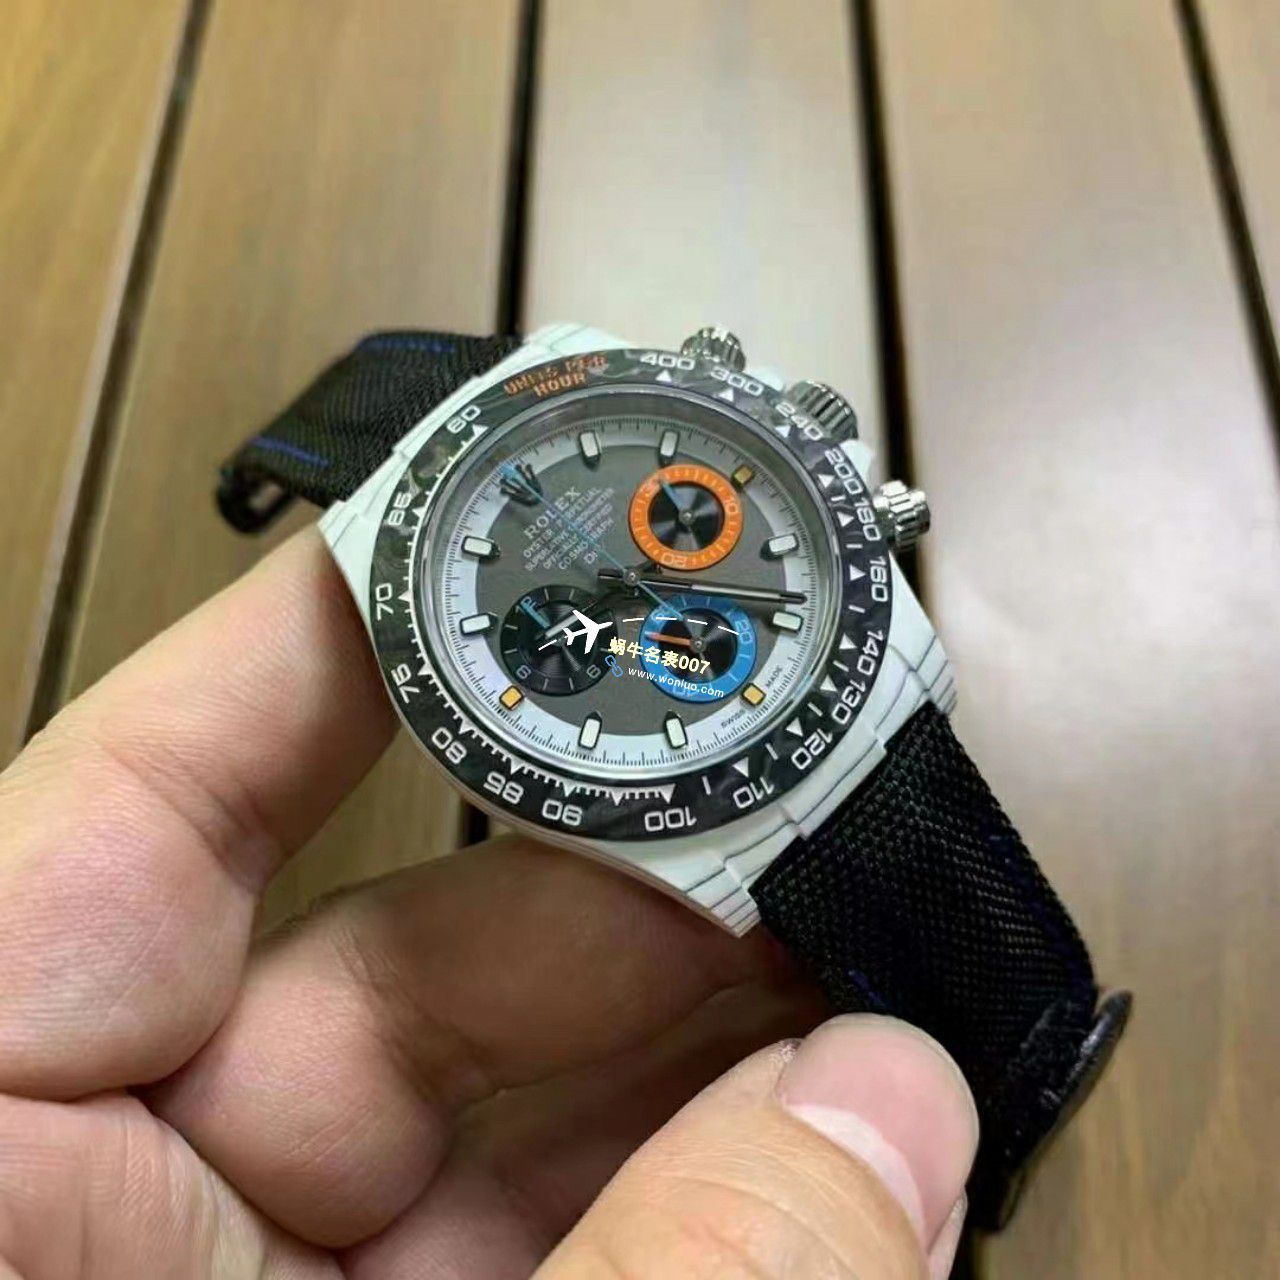 【视频评测】一比一顶级复刻手表Diw顶配碳纤维迪通拿 / R808